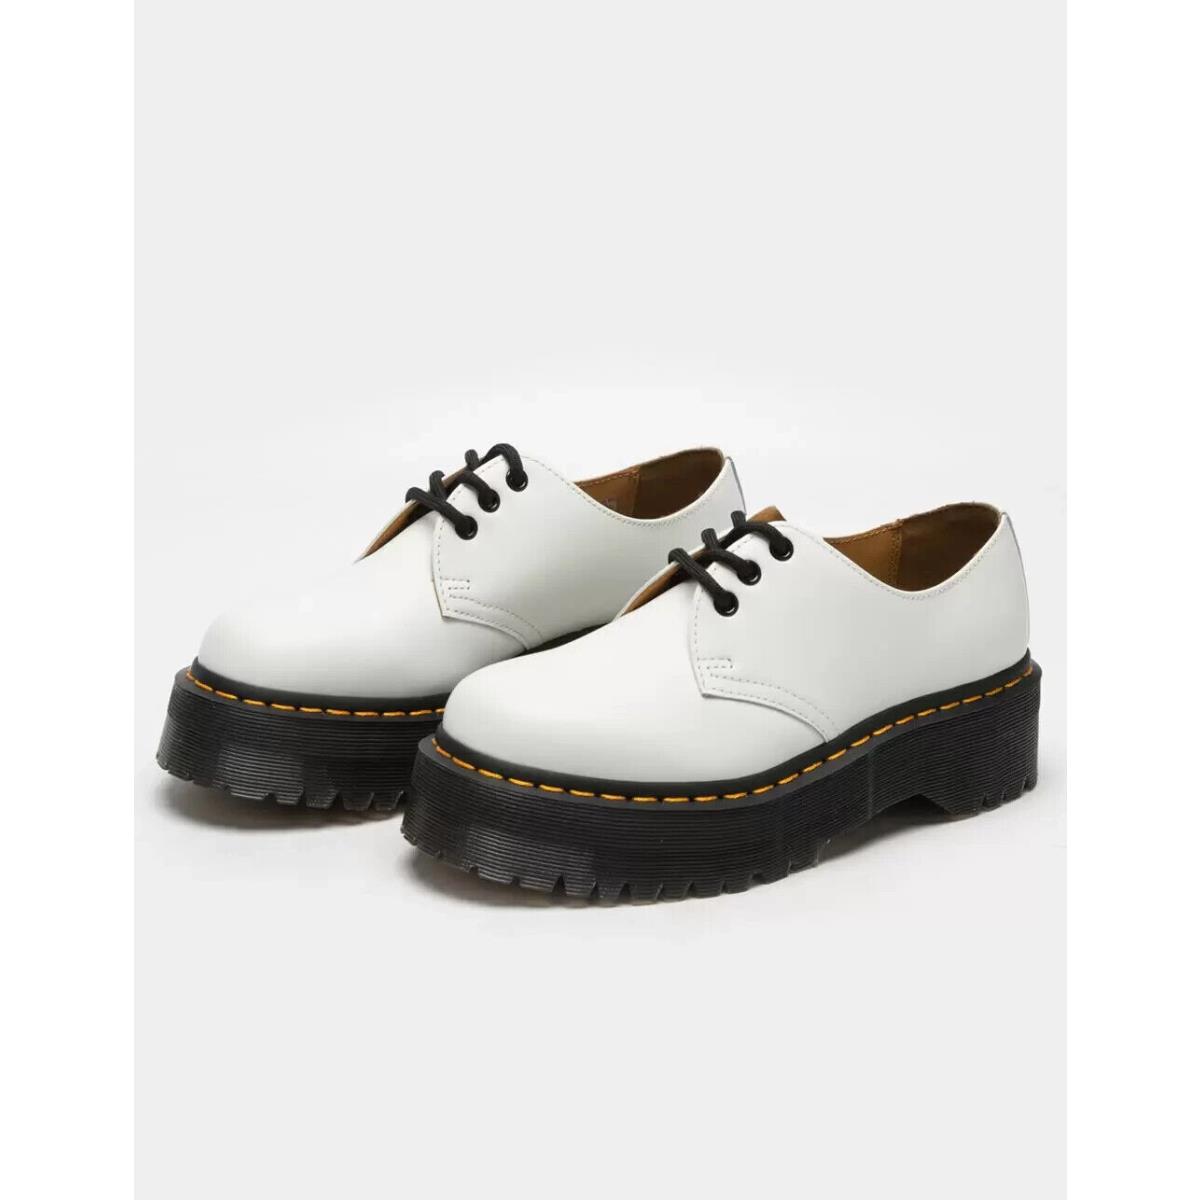 Dr Martens 1461 Quad Retro White Smooth Platform Women`s 9 Men`s 8 Shoes